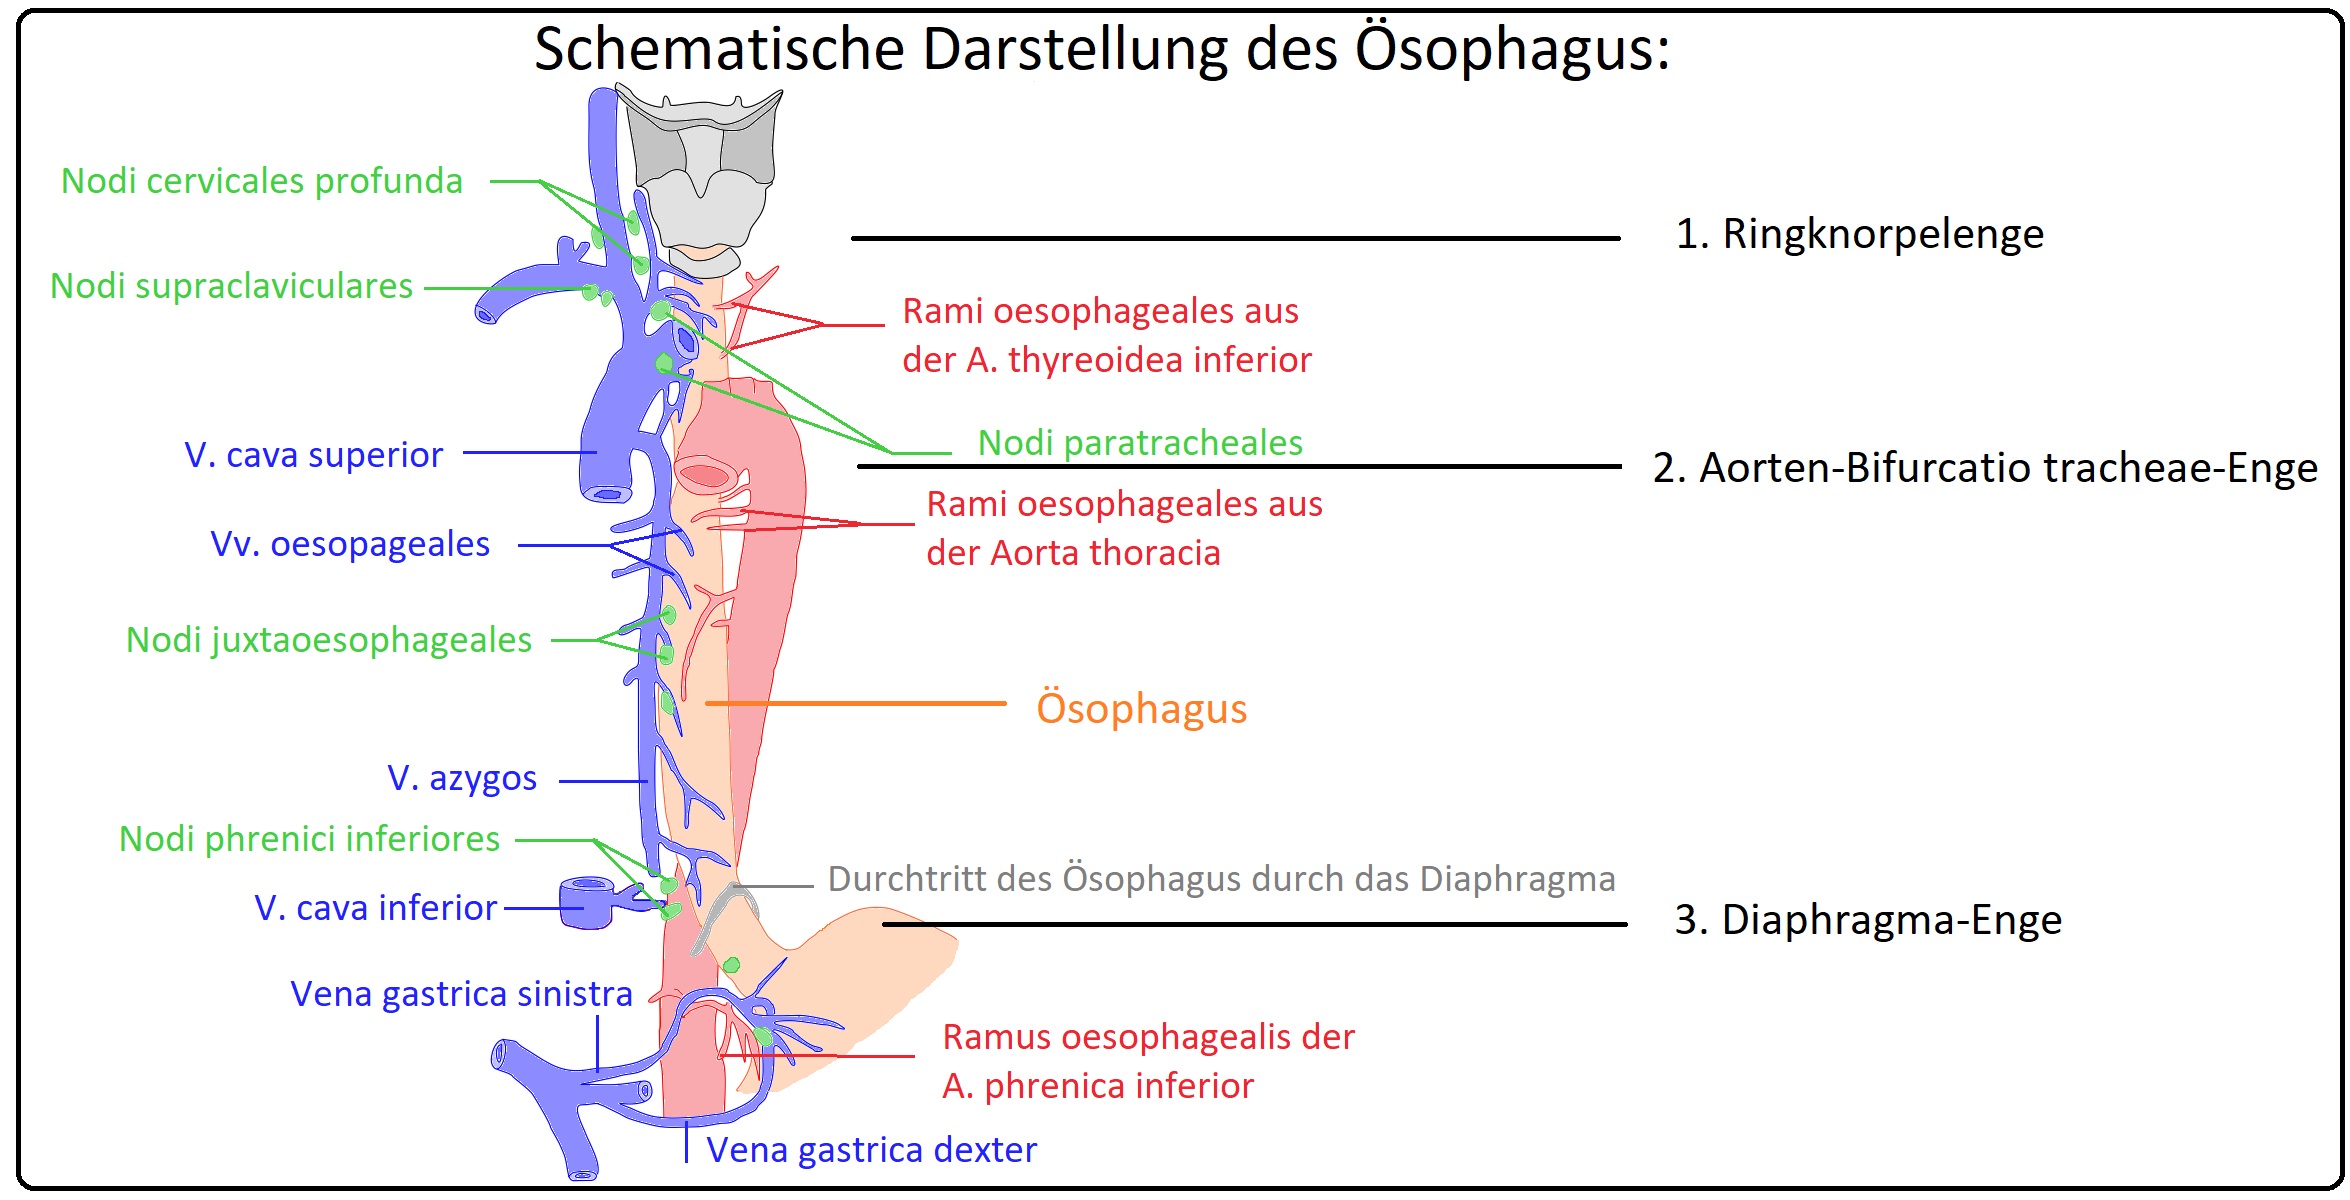 547 Schematische Darstellung des Ösophagus